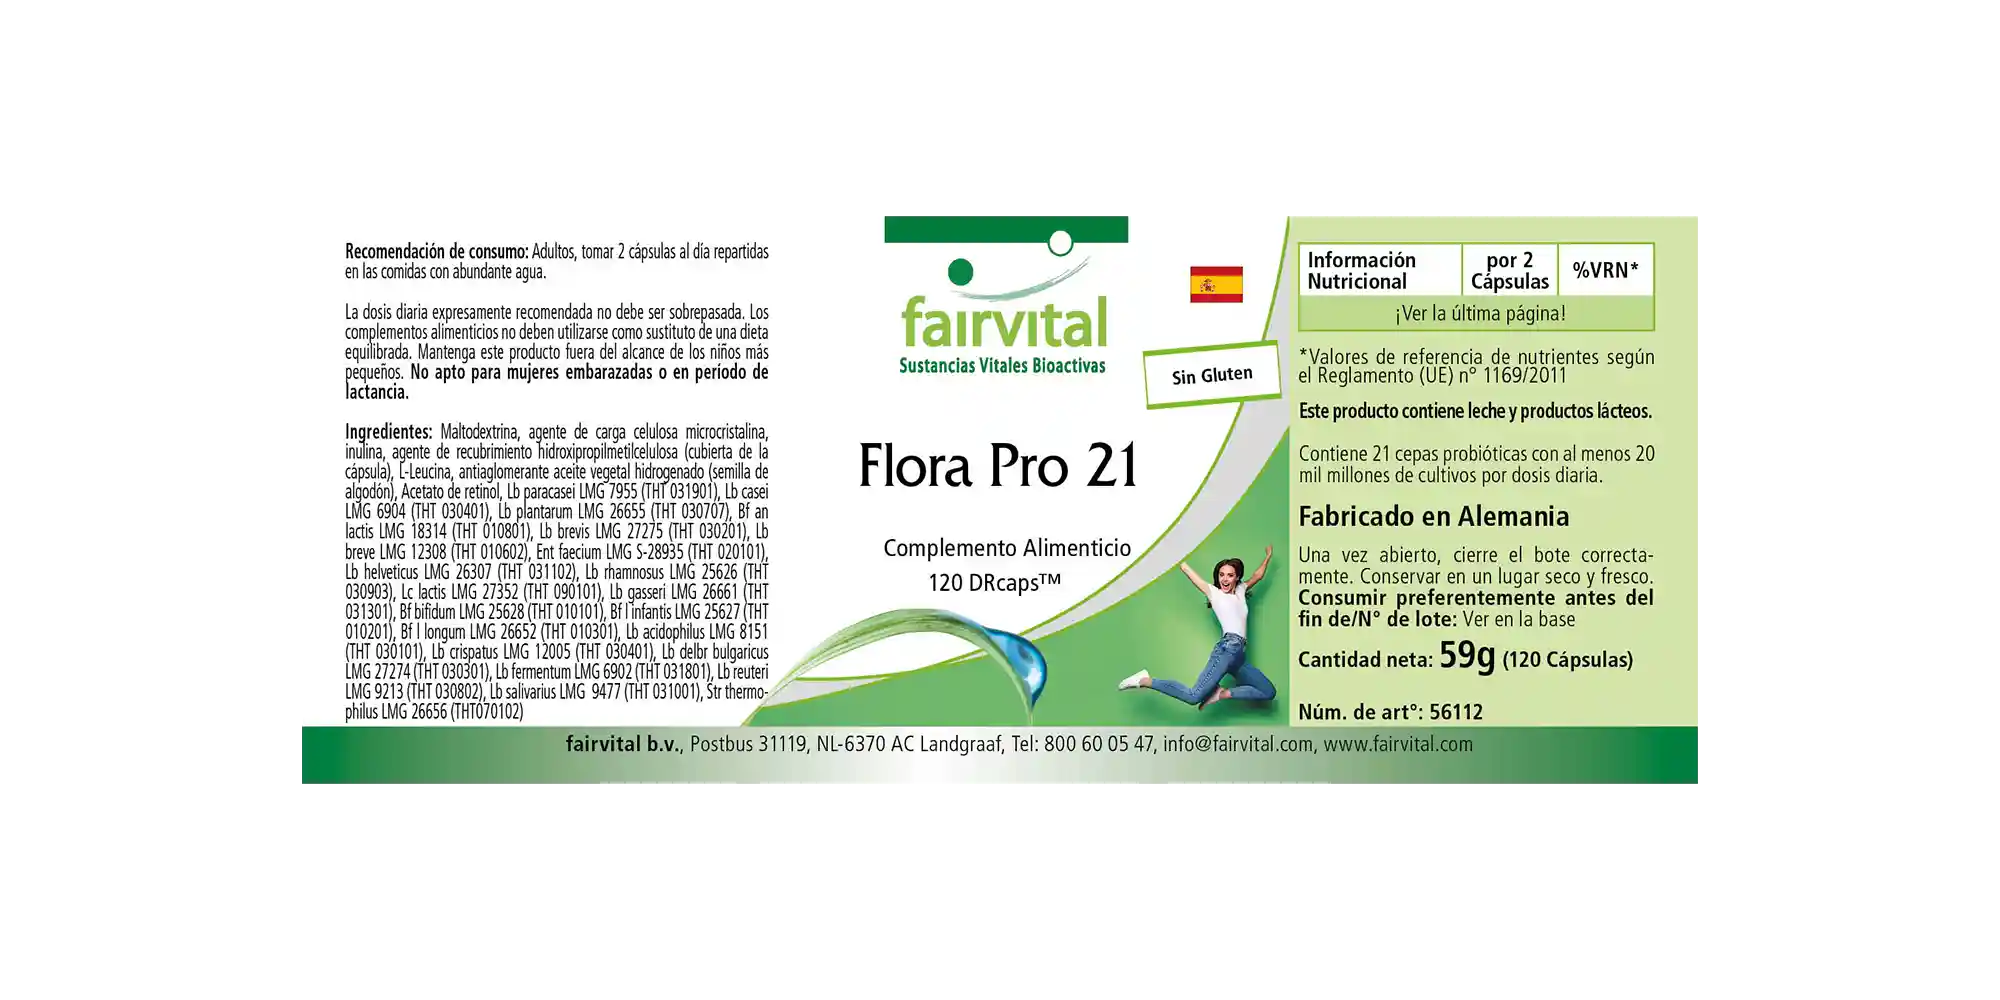 Flora Pro 21